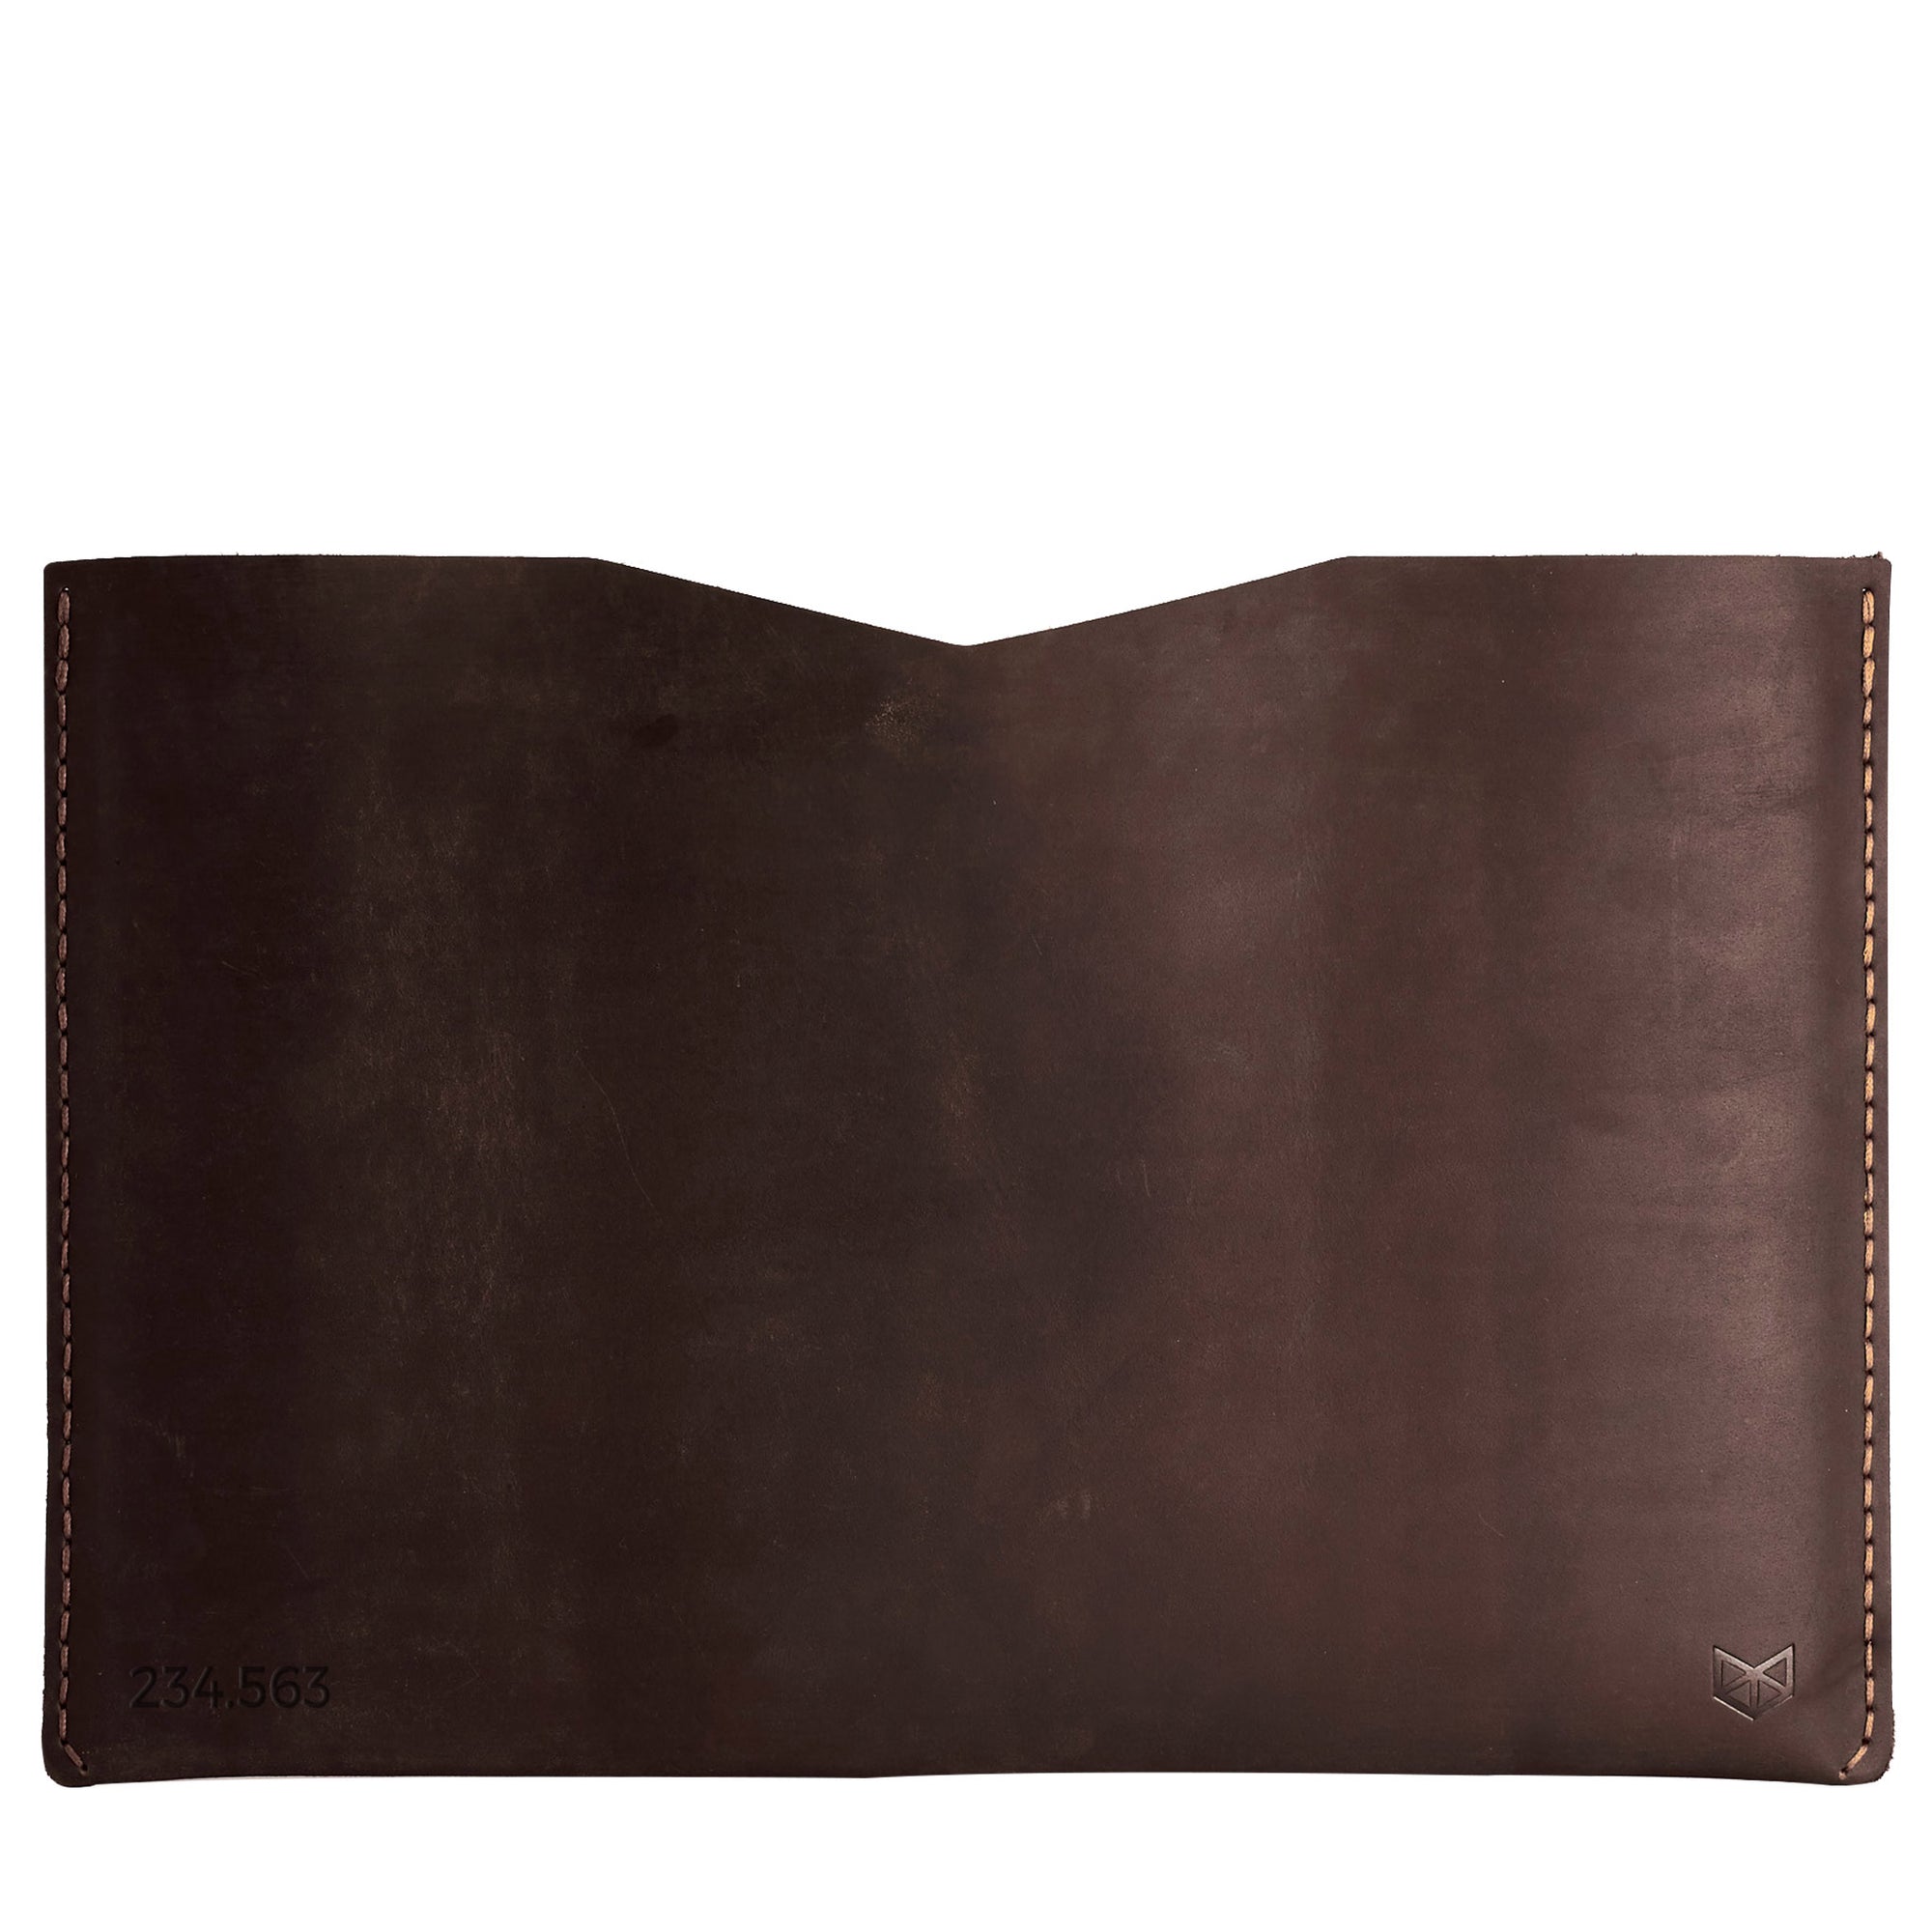 BASIC // MARRON: Leather Lenovo Yoga Thinkpad Sleeve Case by Capra Leather